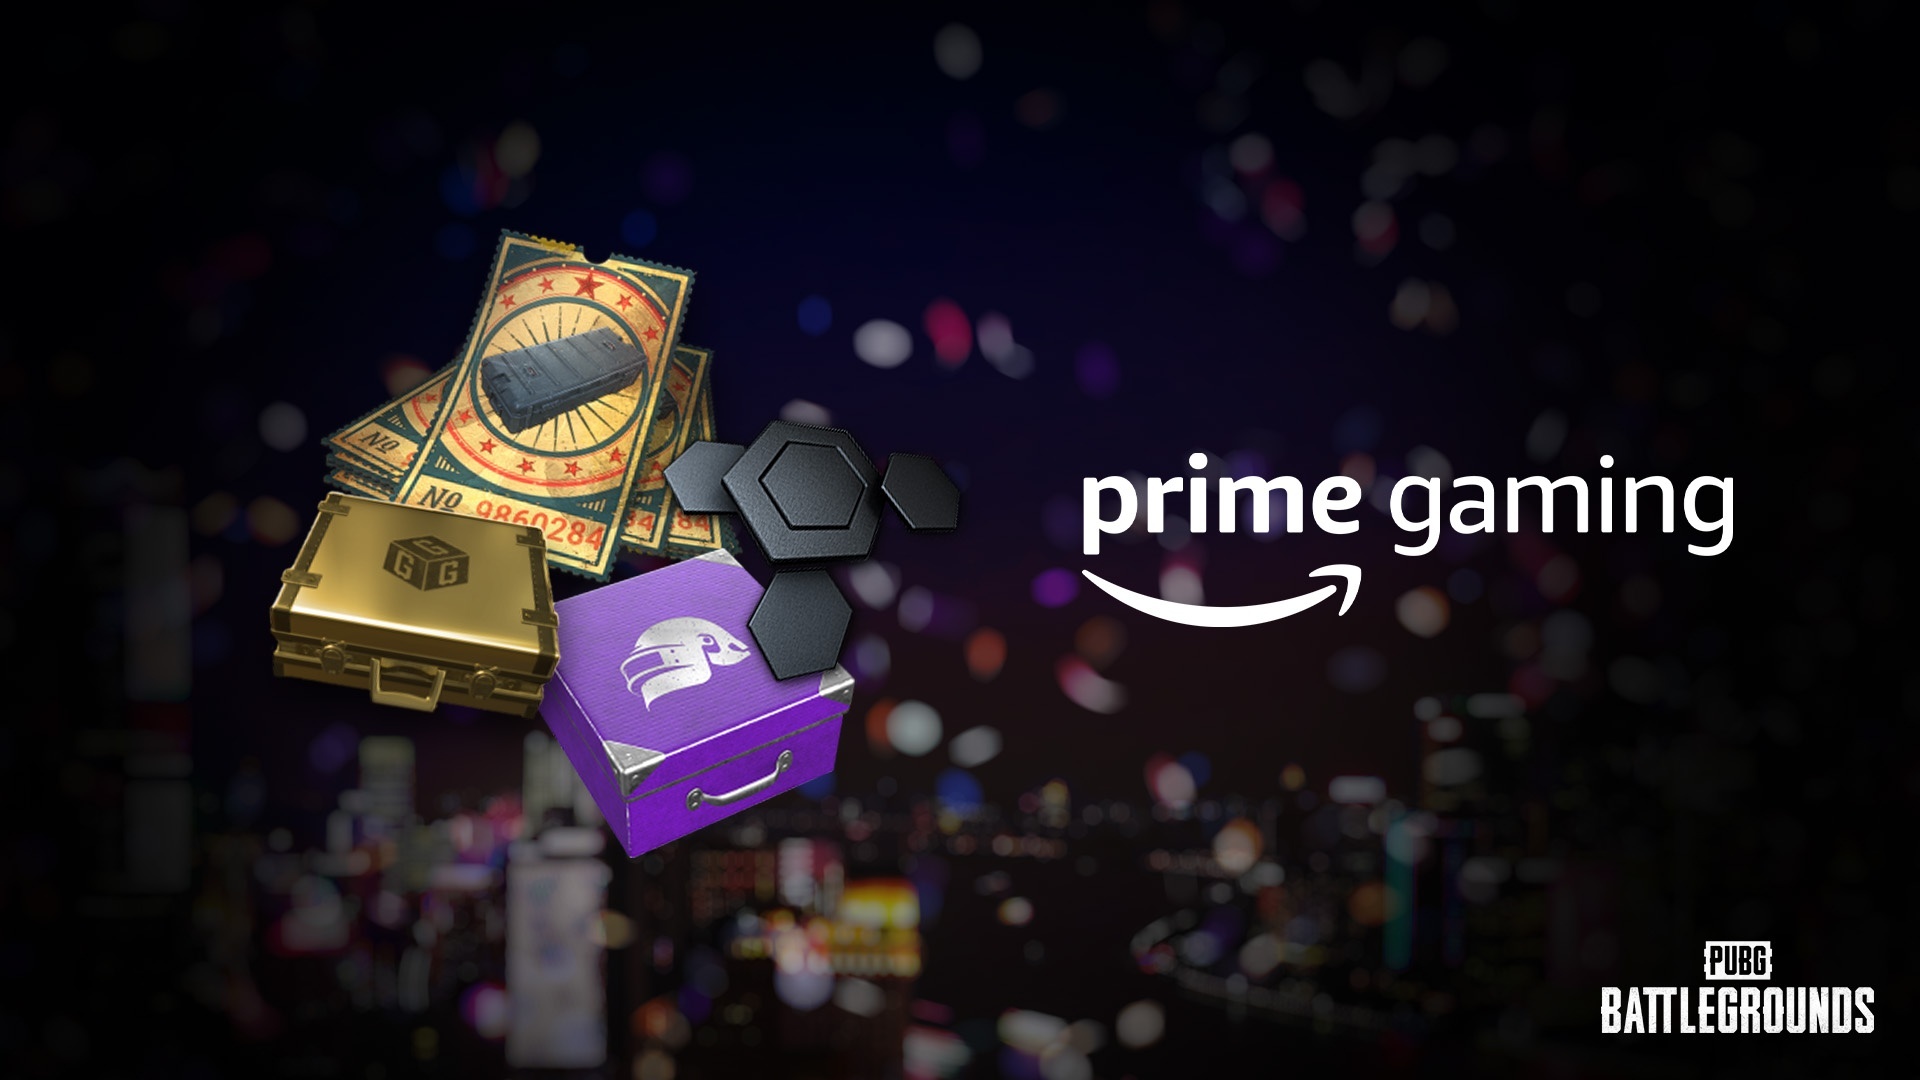 New Prime Gaming Loot - Reskin Ticket - News